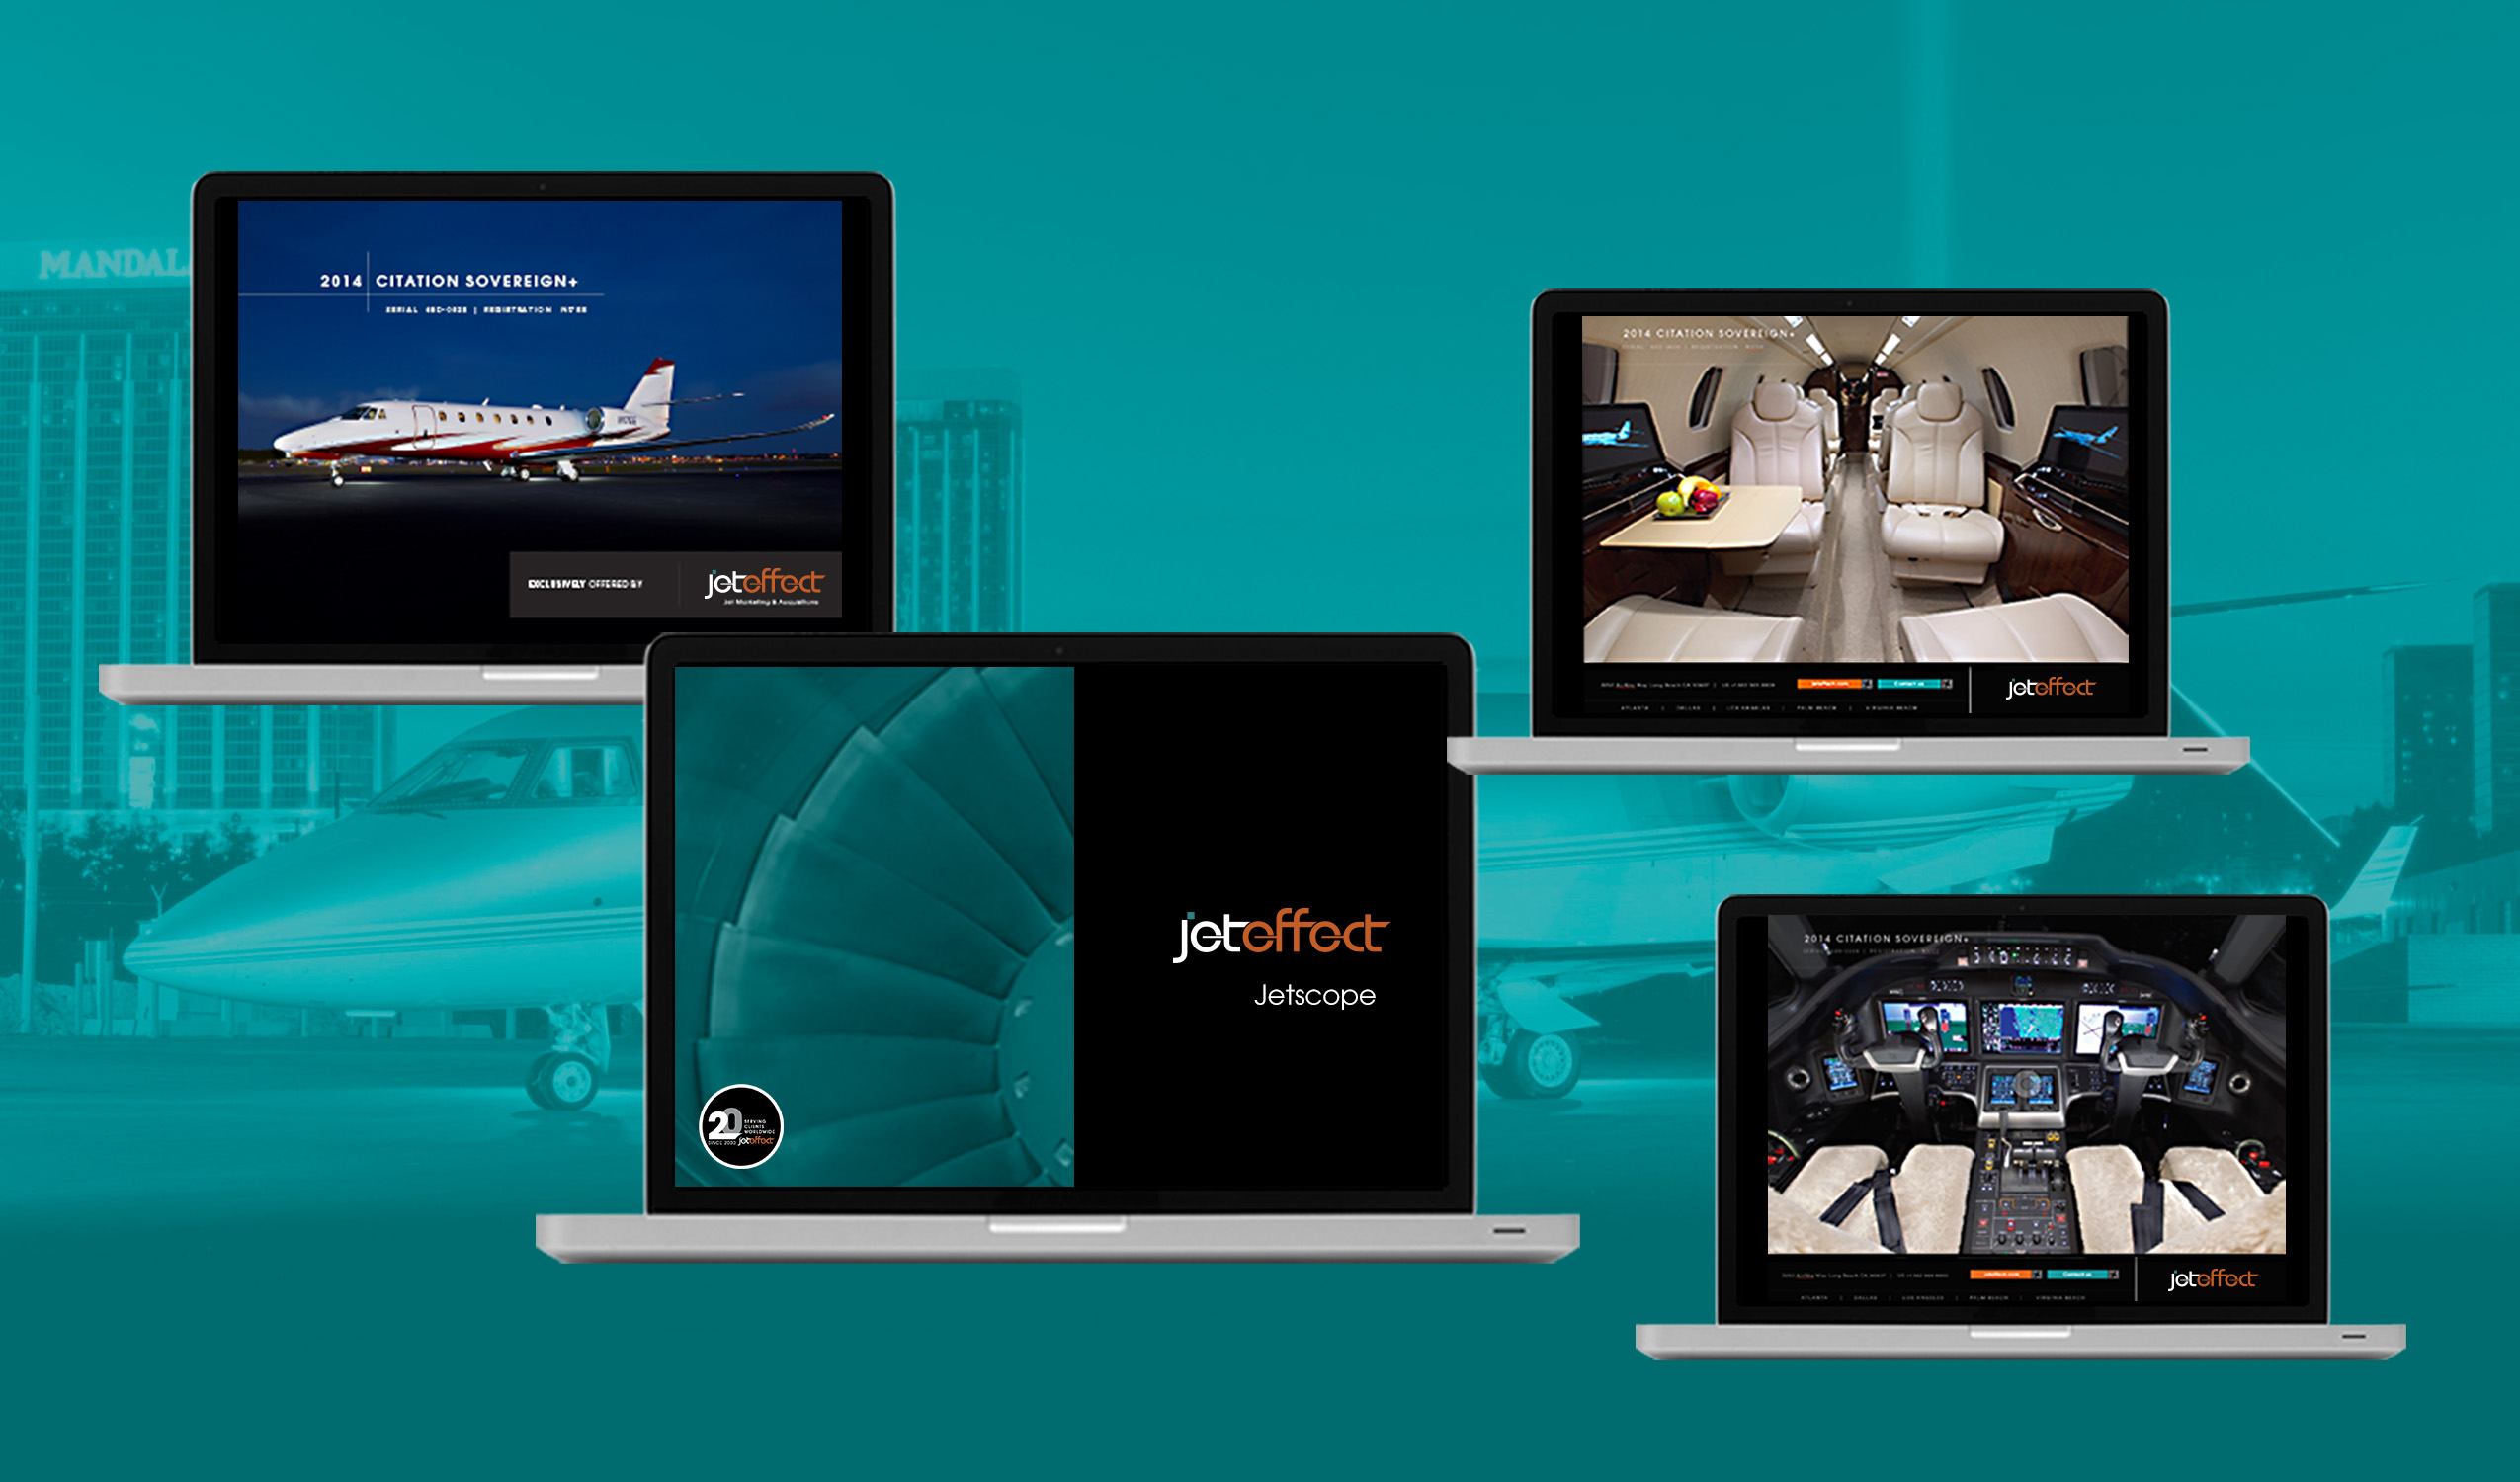 Jeteffect Jetscope Brochure.jpg